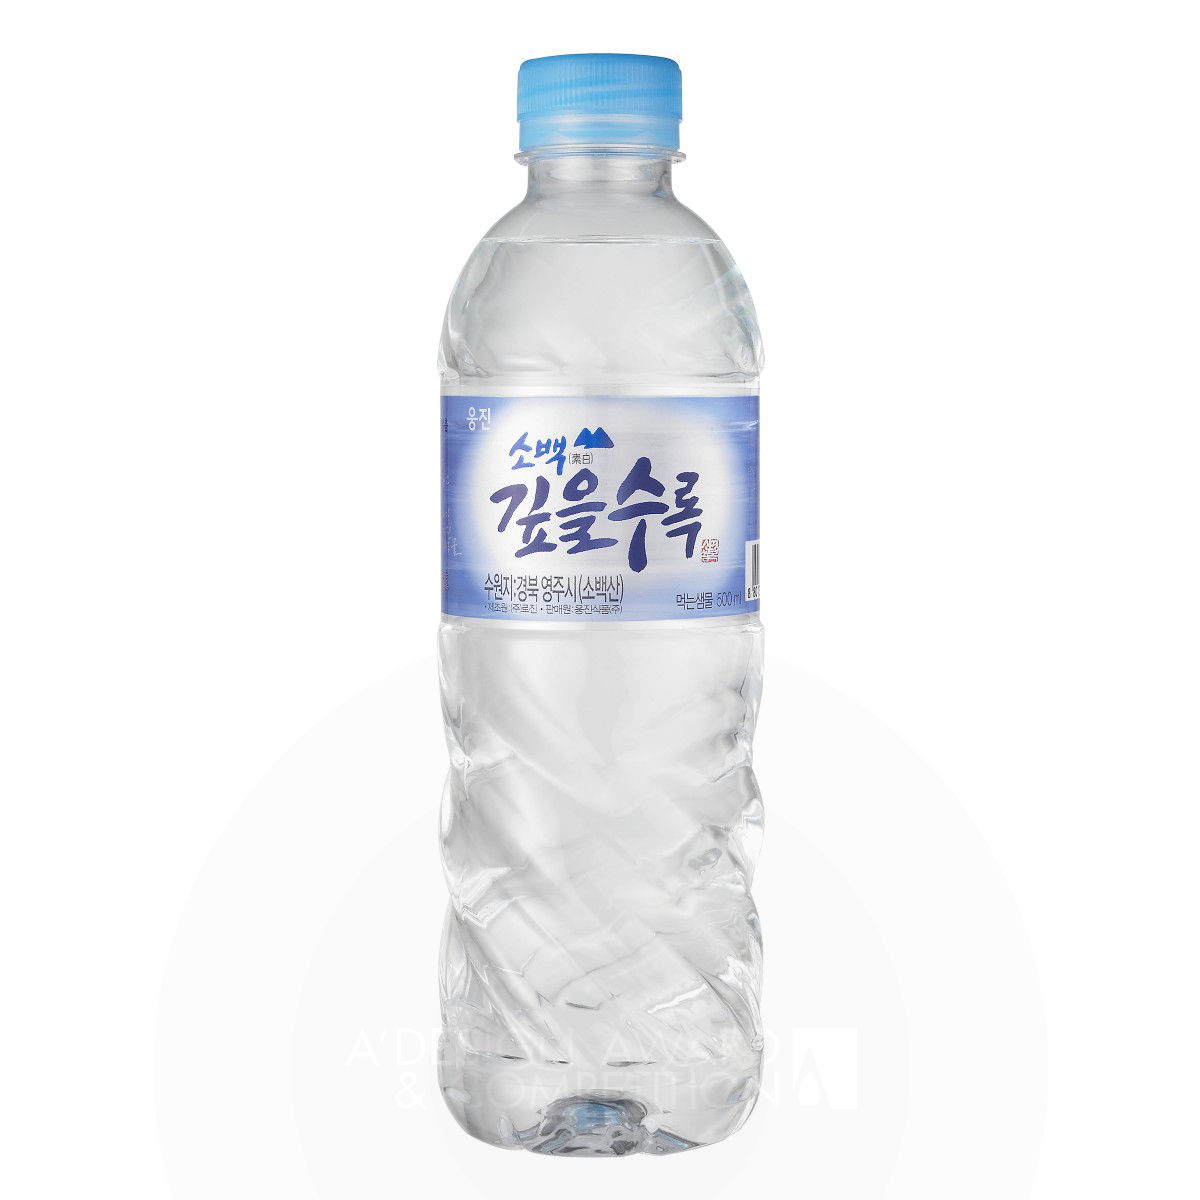 Sobek Deeper Water water by Woongjin Food Design Team